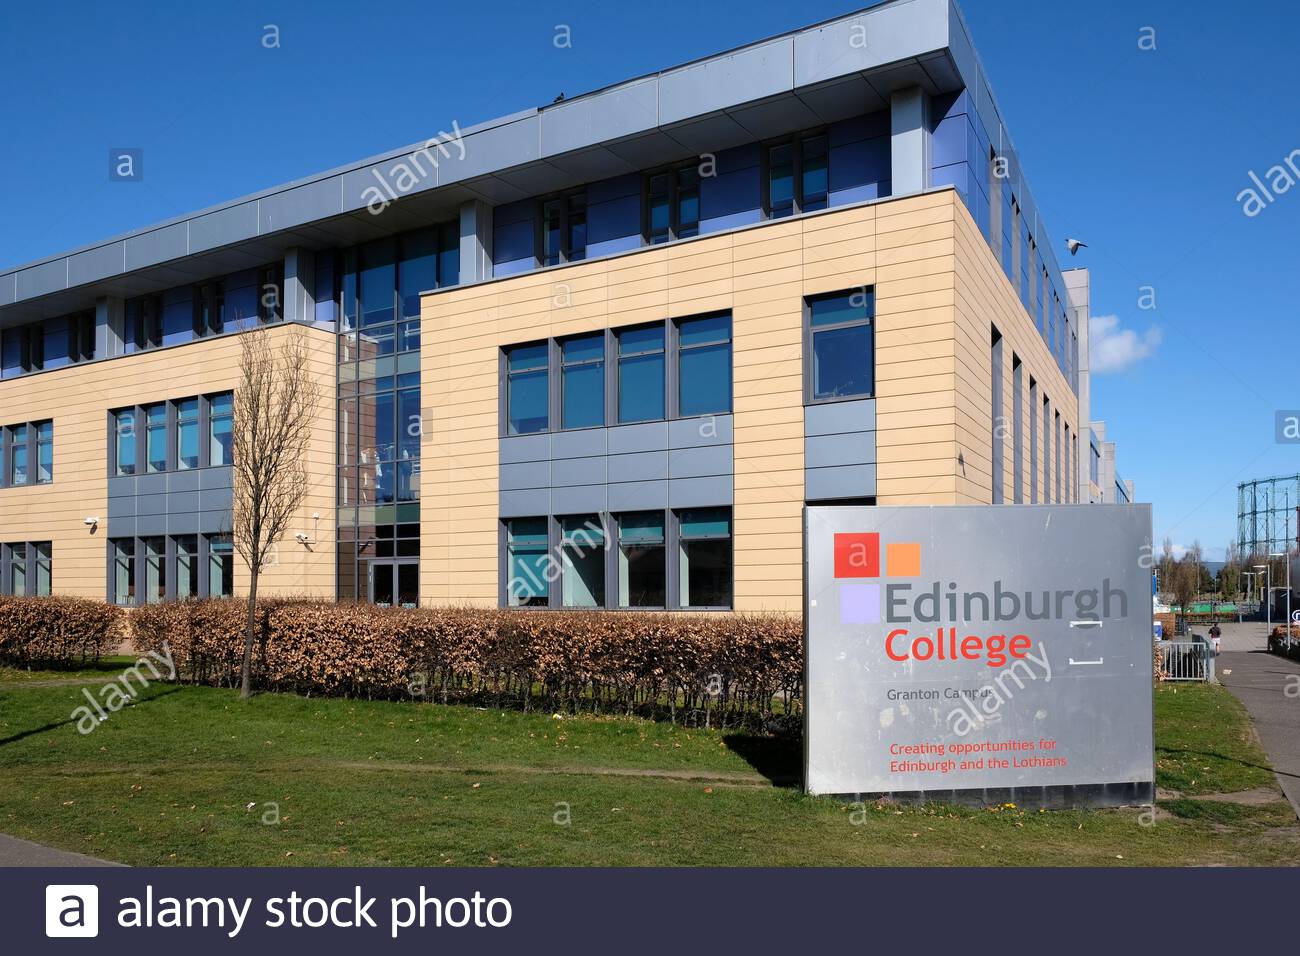 Edinburgh College building, Granton Campus, Edinburgh, Scotland Stock Photo